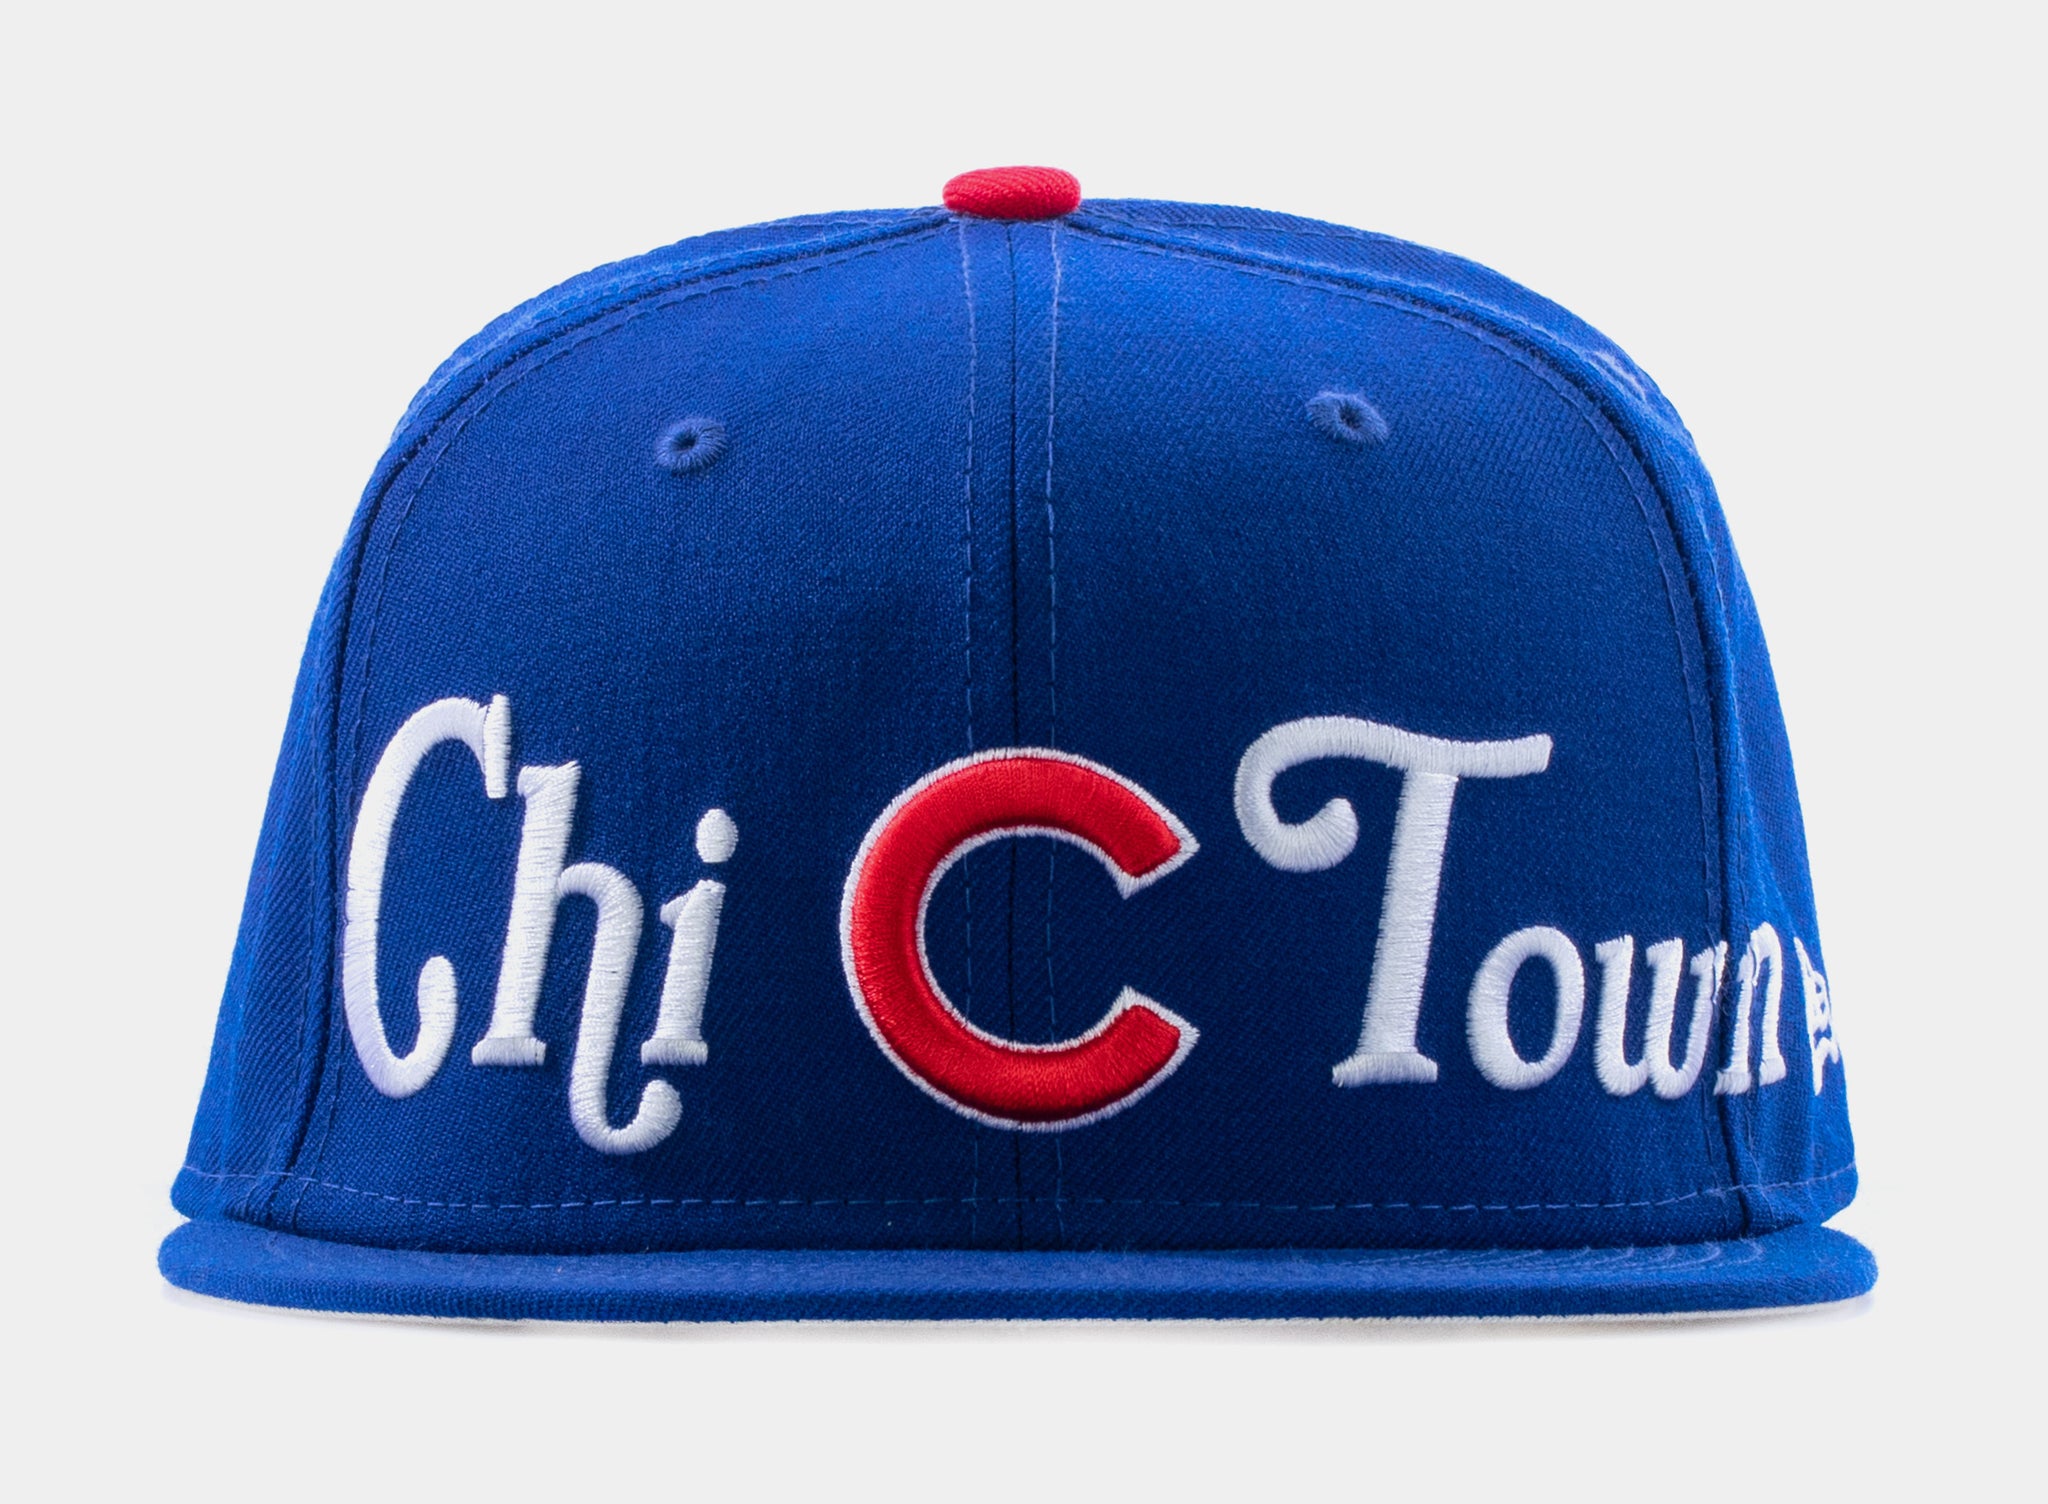 Chicago Cubs cap